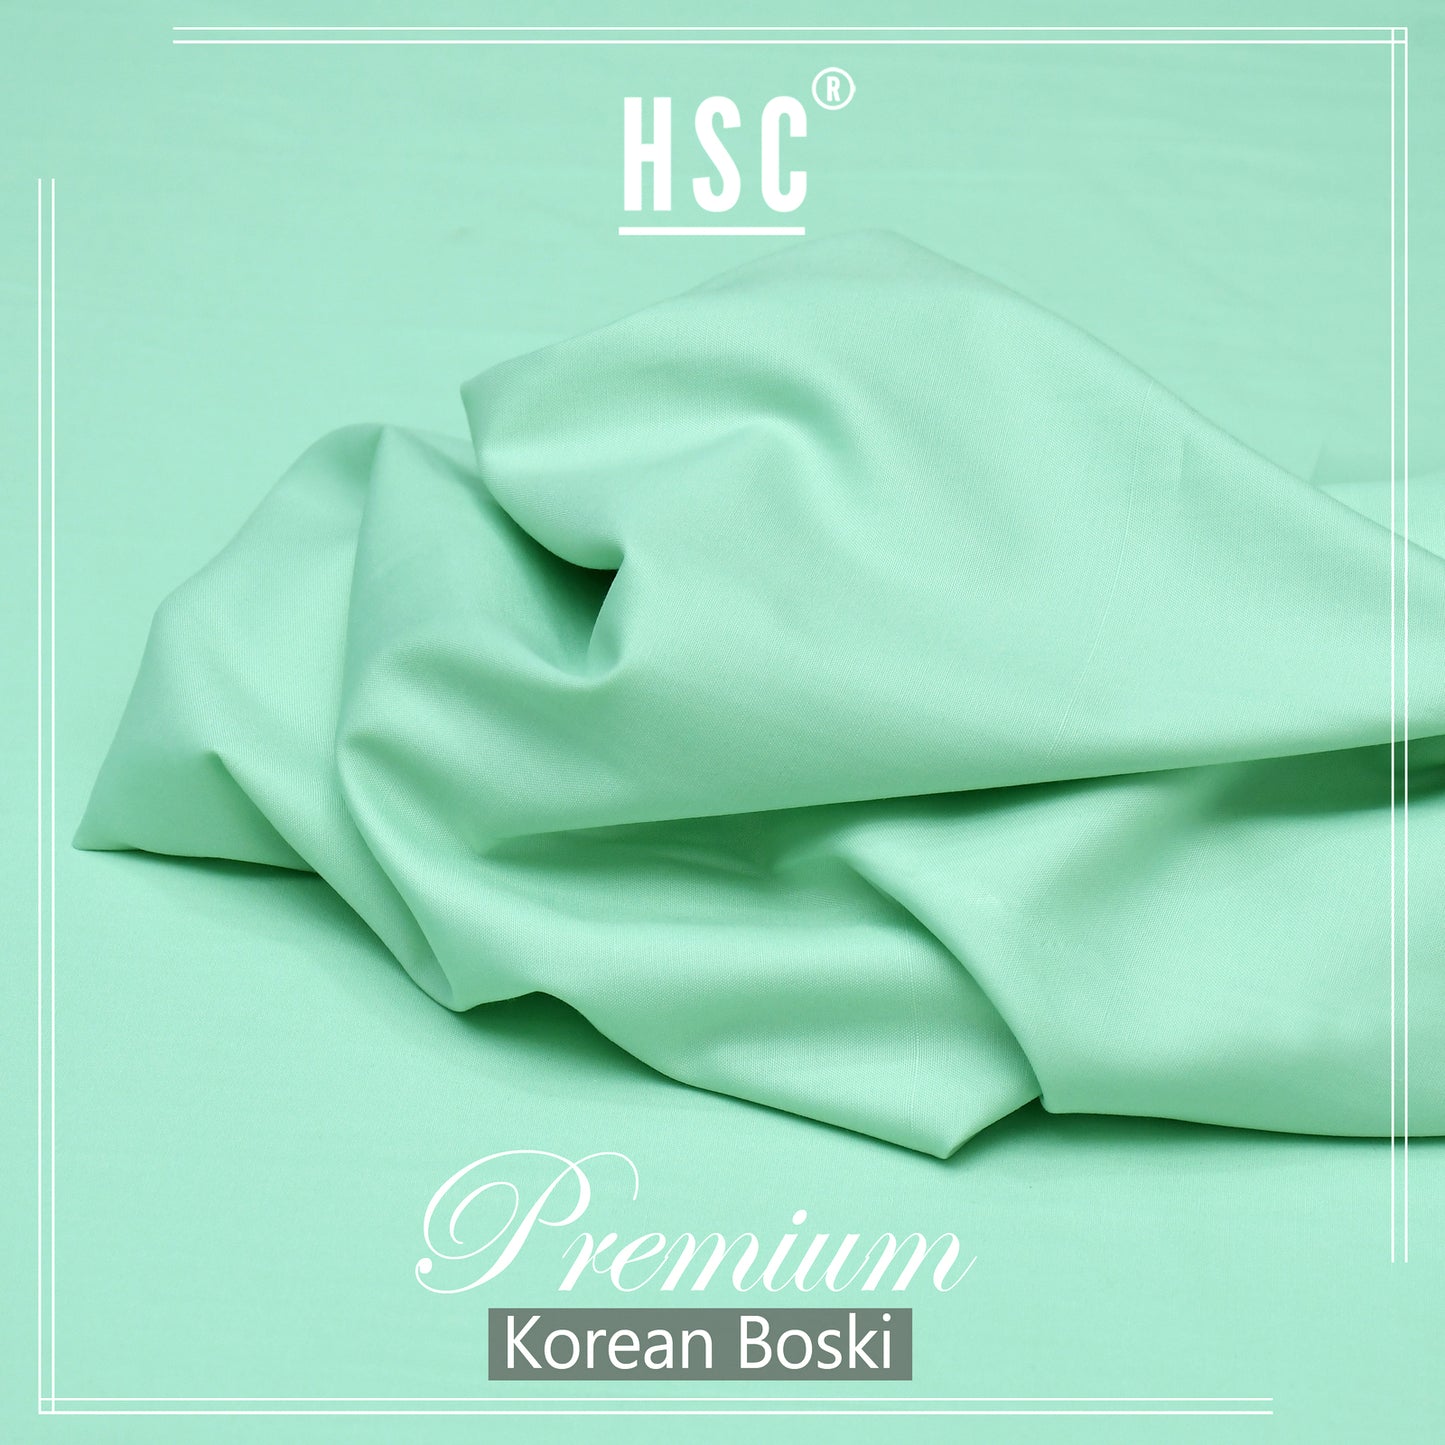 Buy1 Get 1 Free Premium Korean Boski For Men - NPKB15 HSC